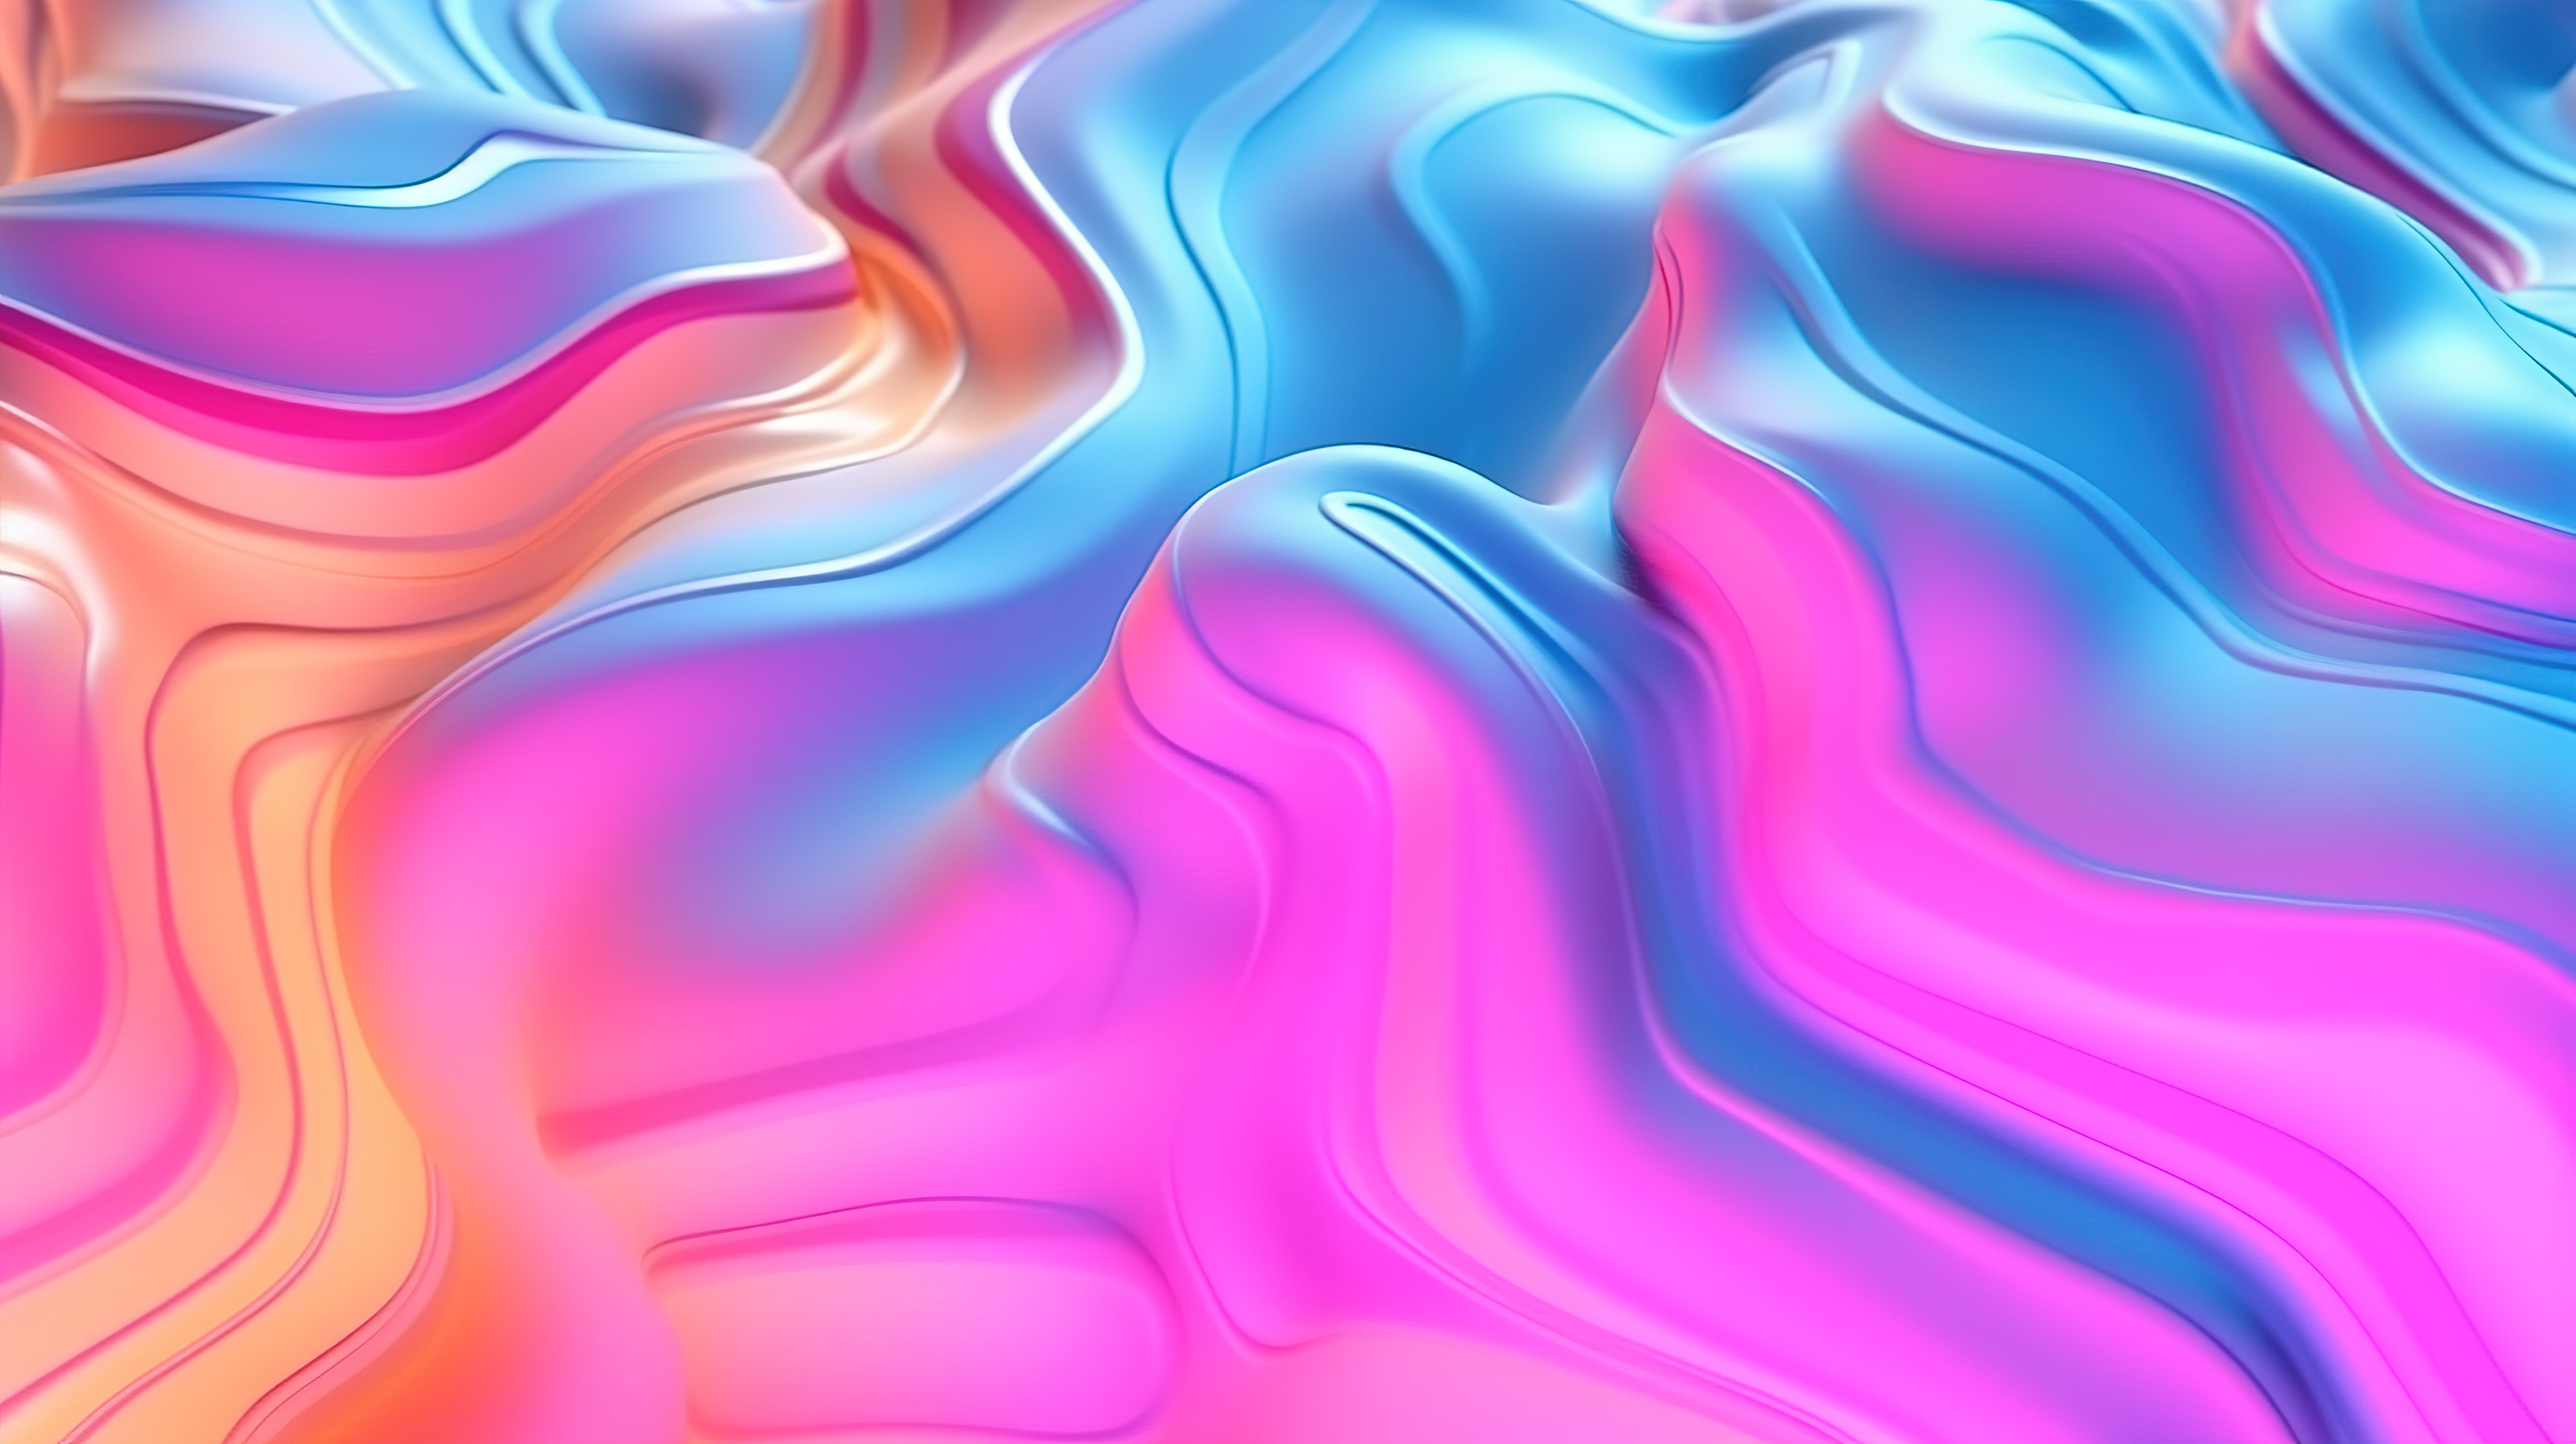 起伏的浮雕白色和霓虹色液体波浪流体抽象背景的 3D 插图图片